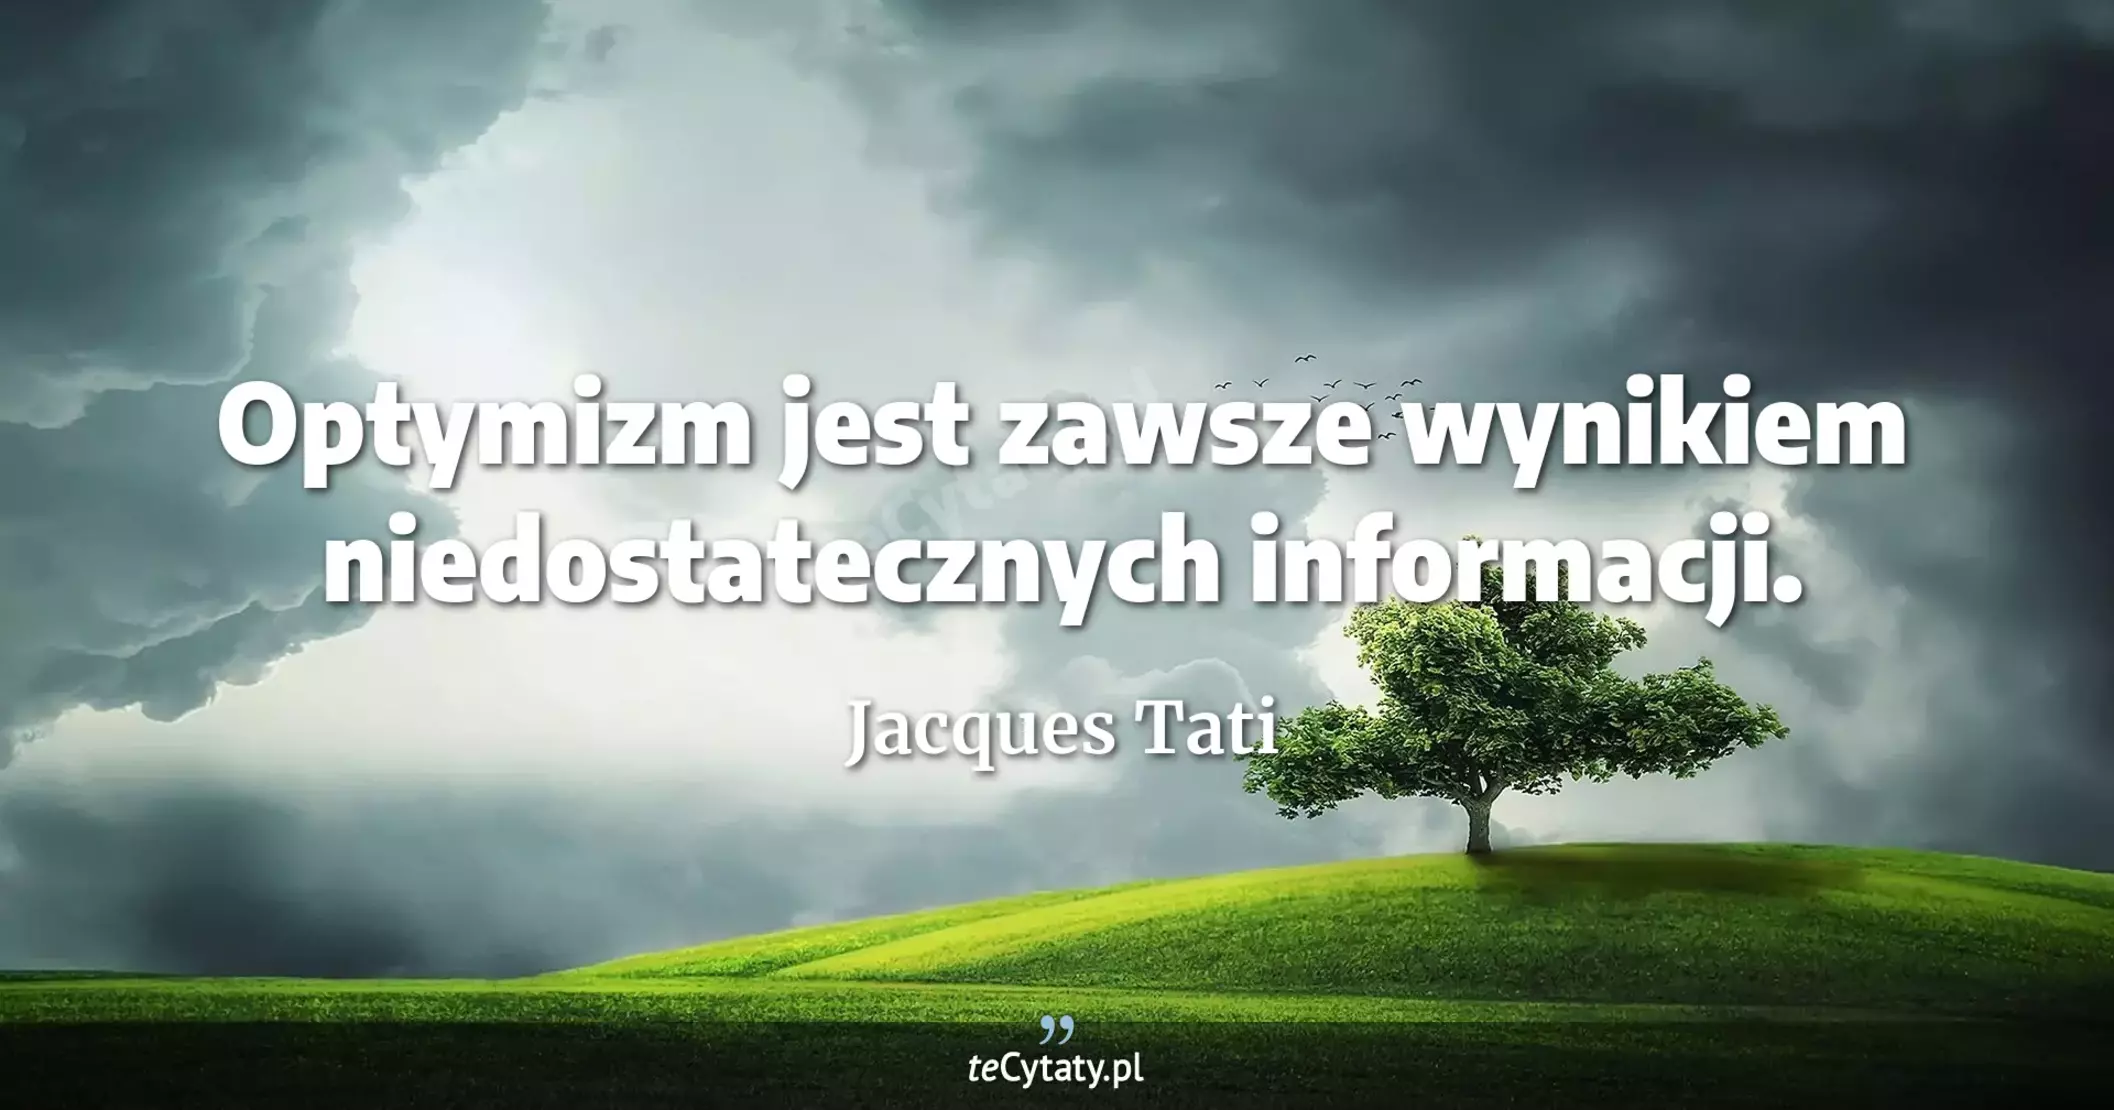 Optymizm jest zawsze wynikiem niedostatecznych informacji. - Jacques Tati